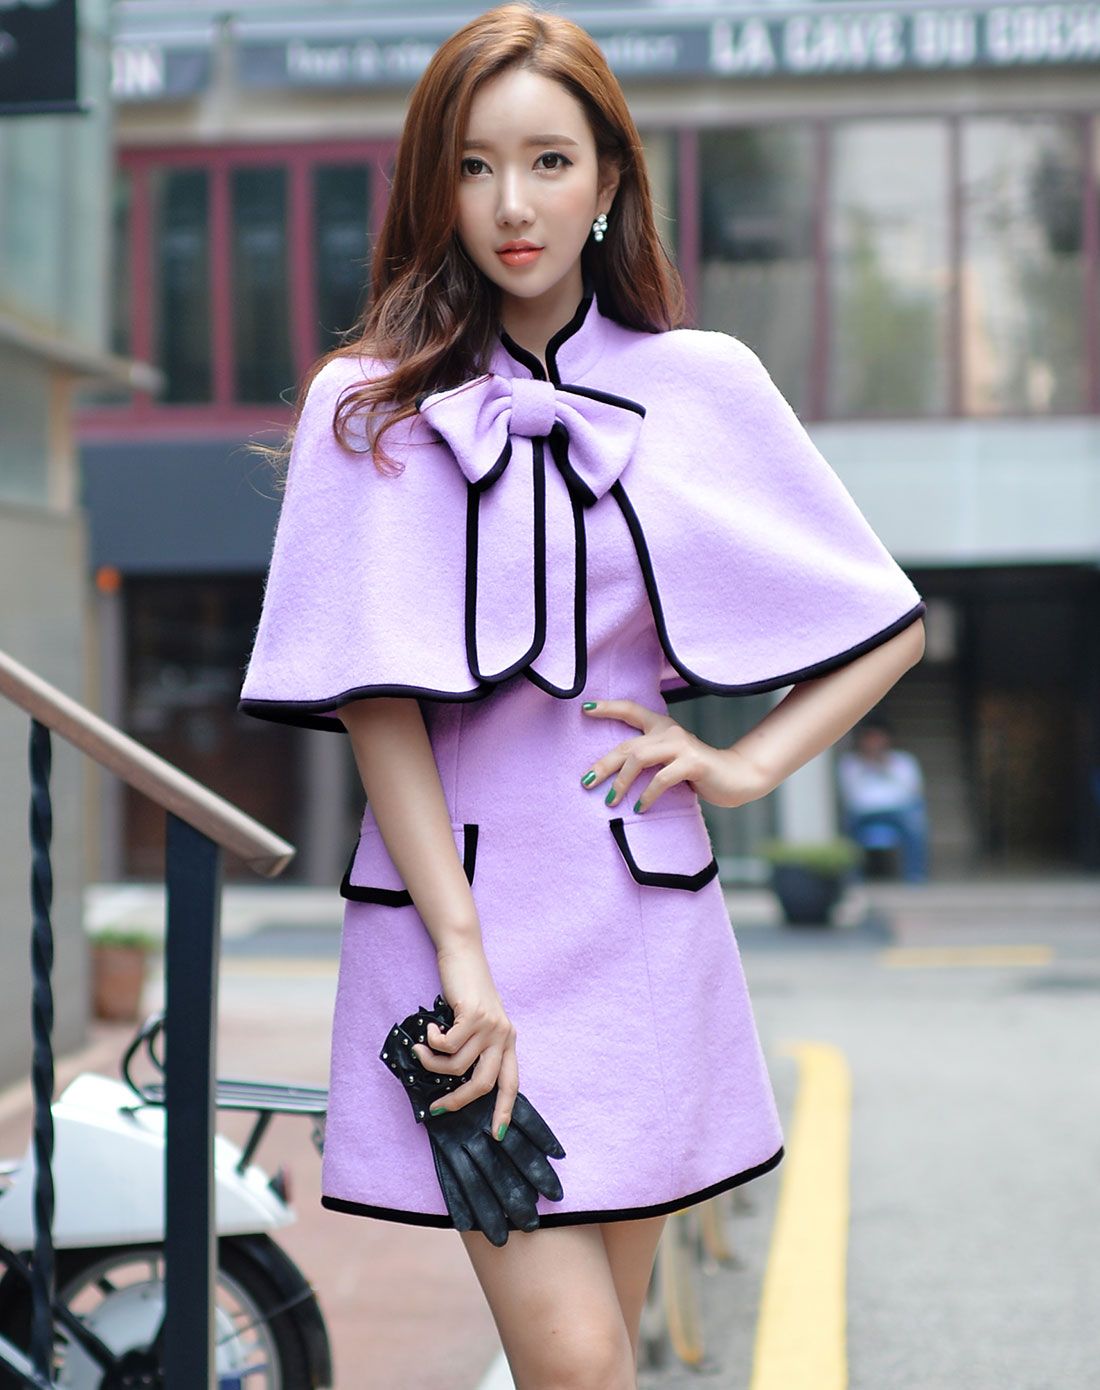 淡紫色连衣裙搭配鞋子图片